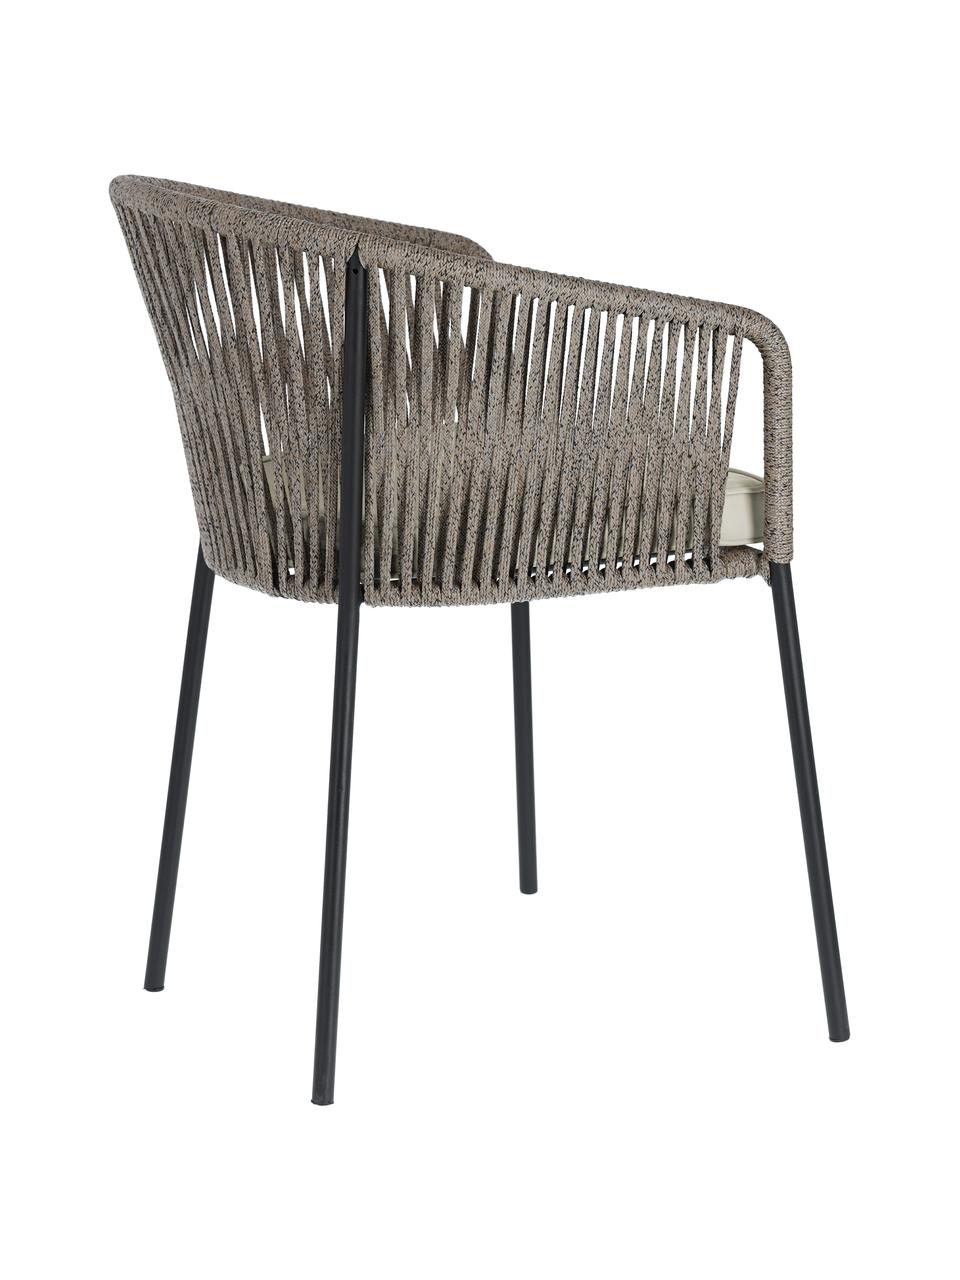 Krzesło ogrodowe Yanet, Stelaż: metal ocynkowany i lakier, Tapicerka: poliester, Szary, S 56 x G 51 cm